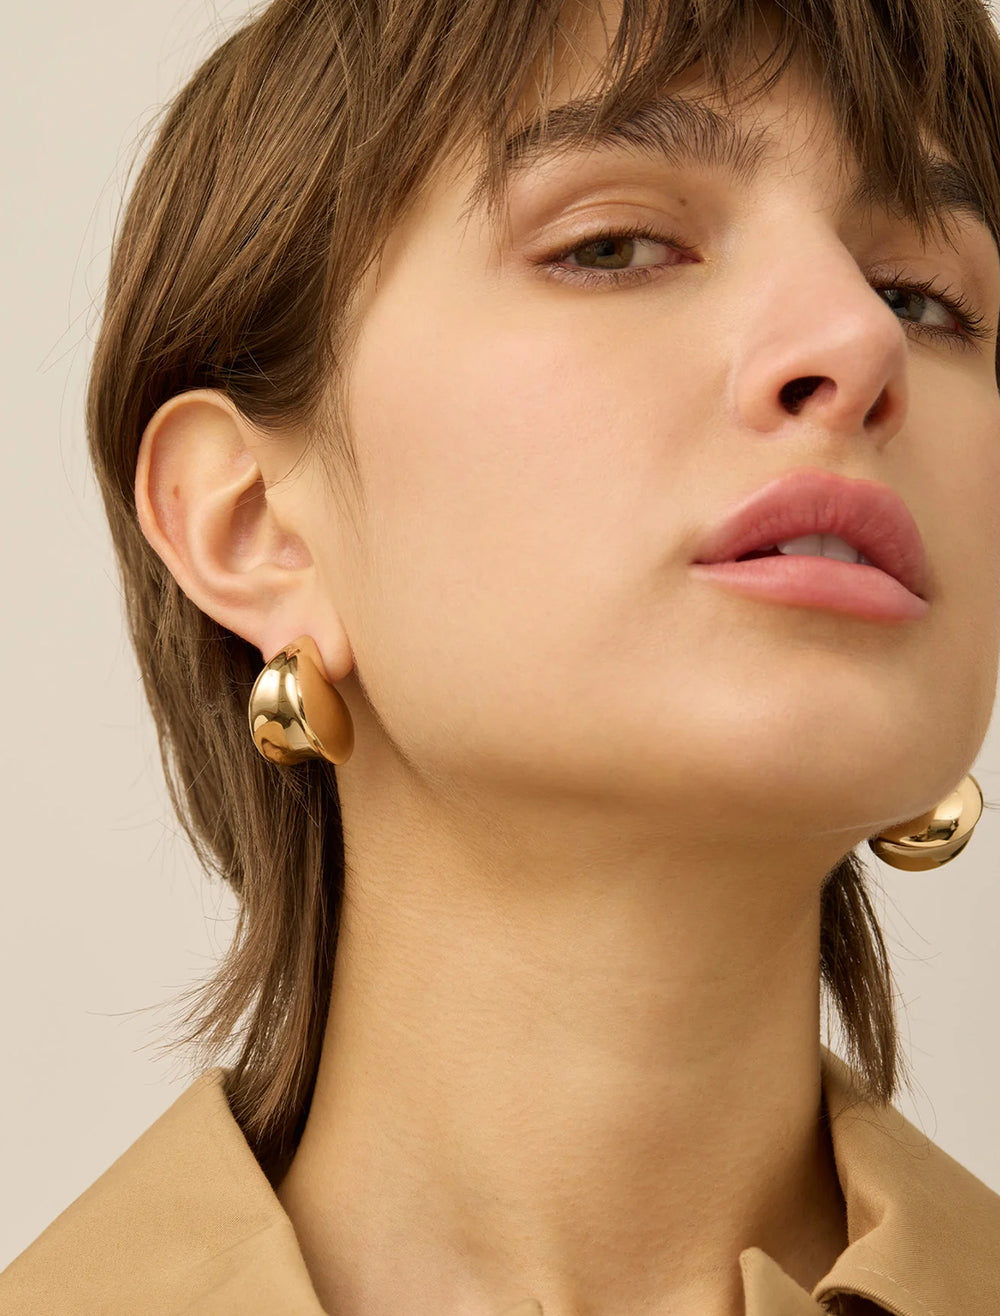 Model wearing Jenny Bird's nouveaux puff earrings in gold.